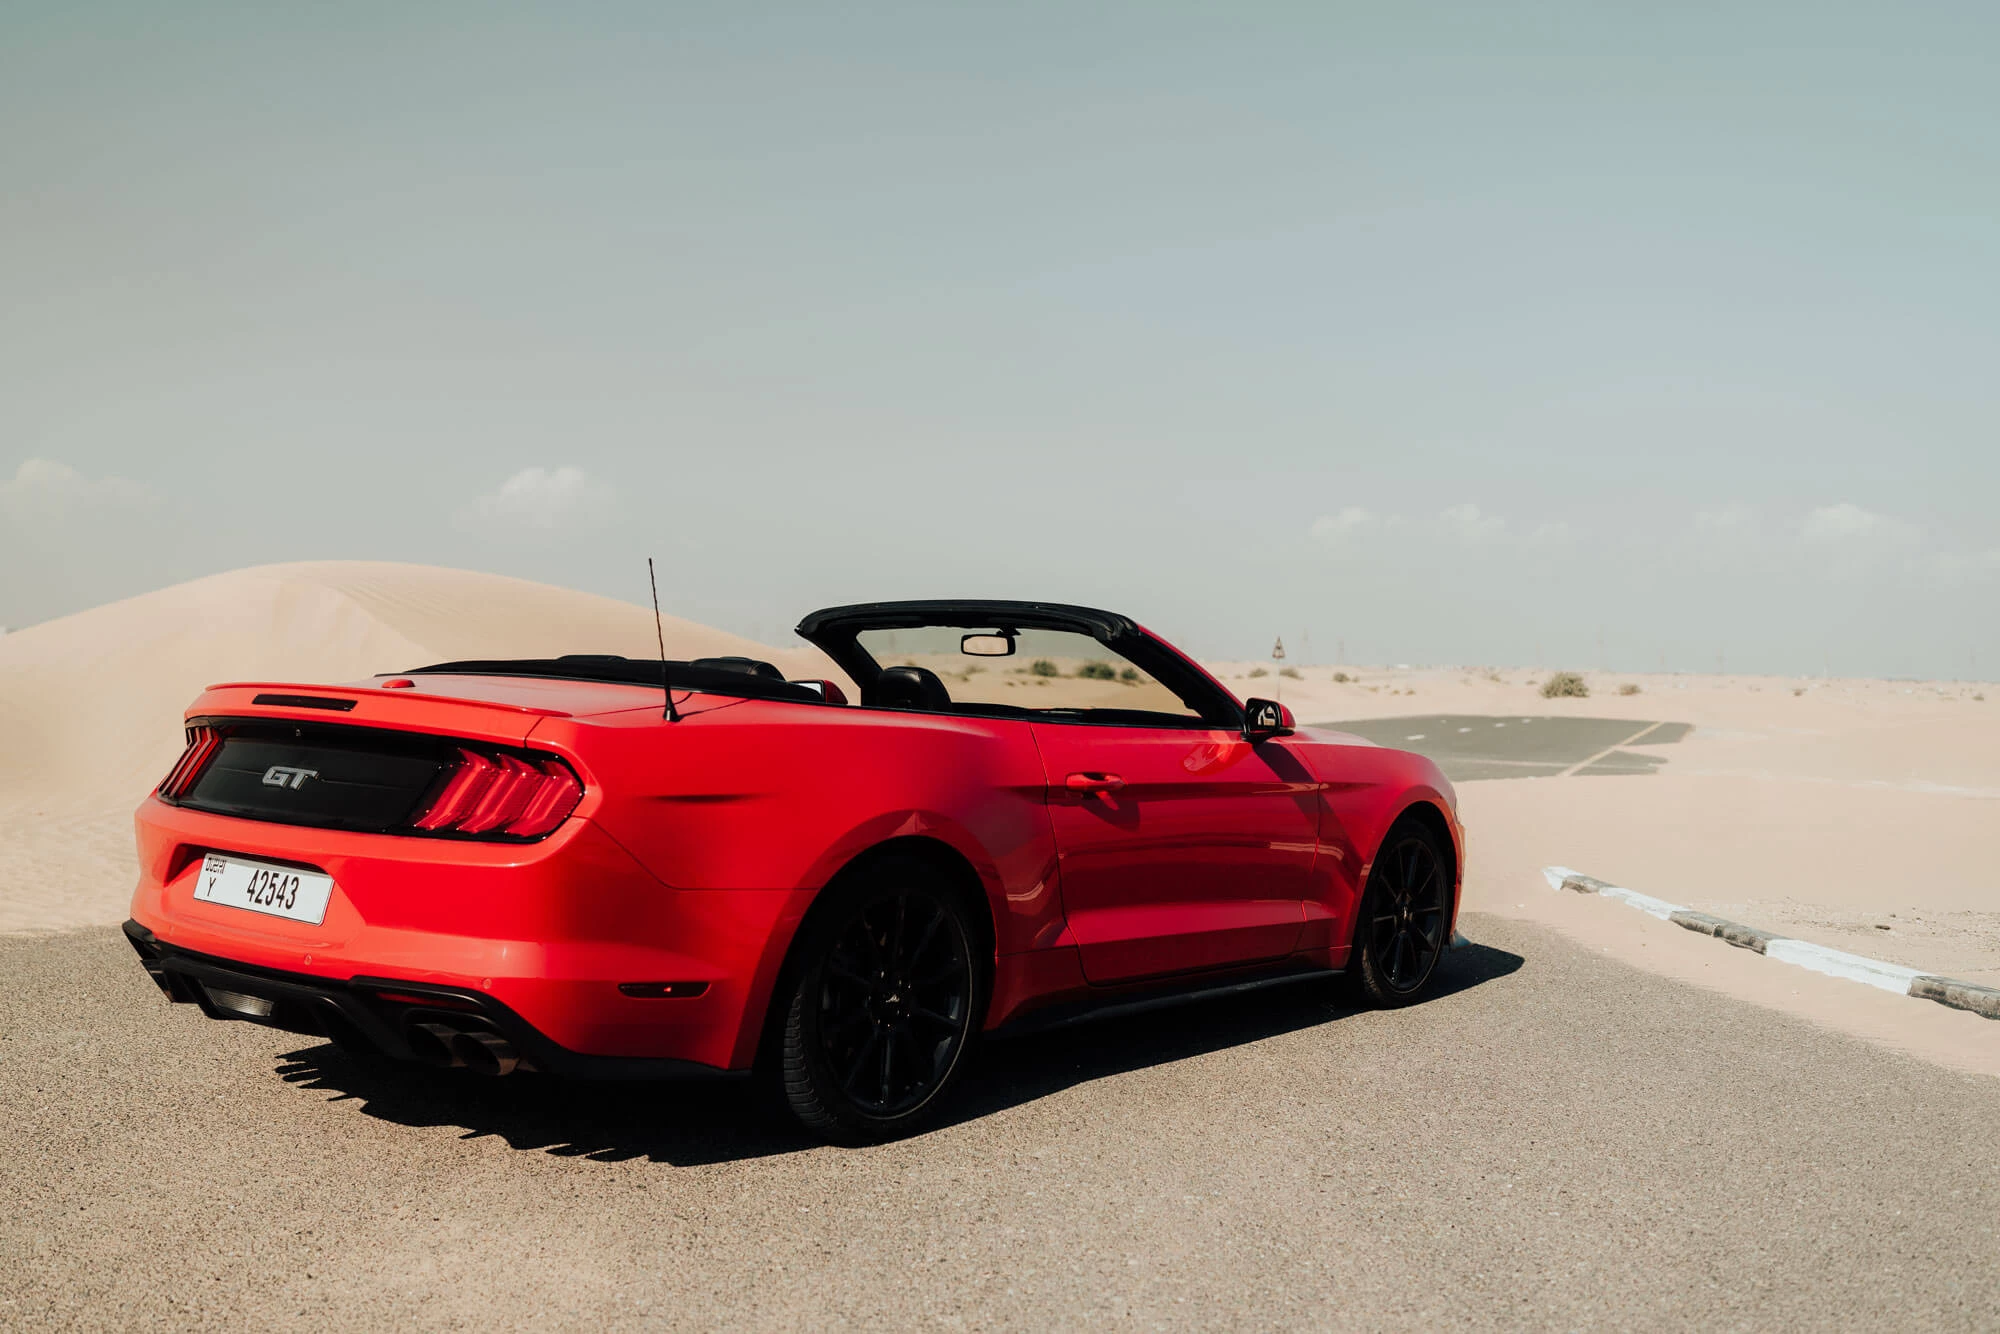 Ford Mustang Rød